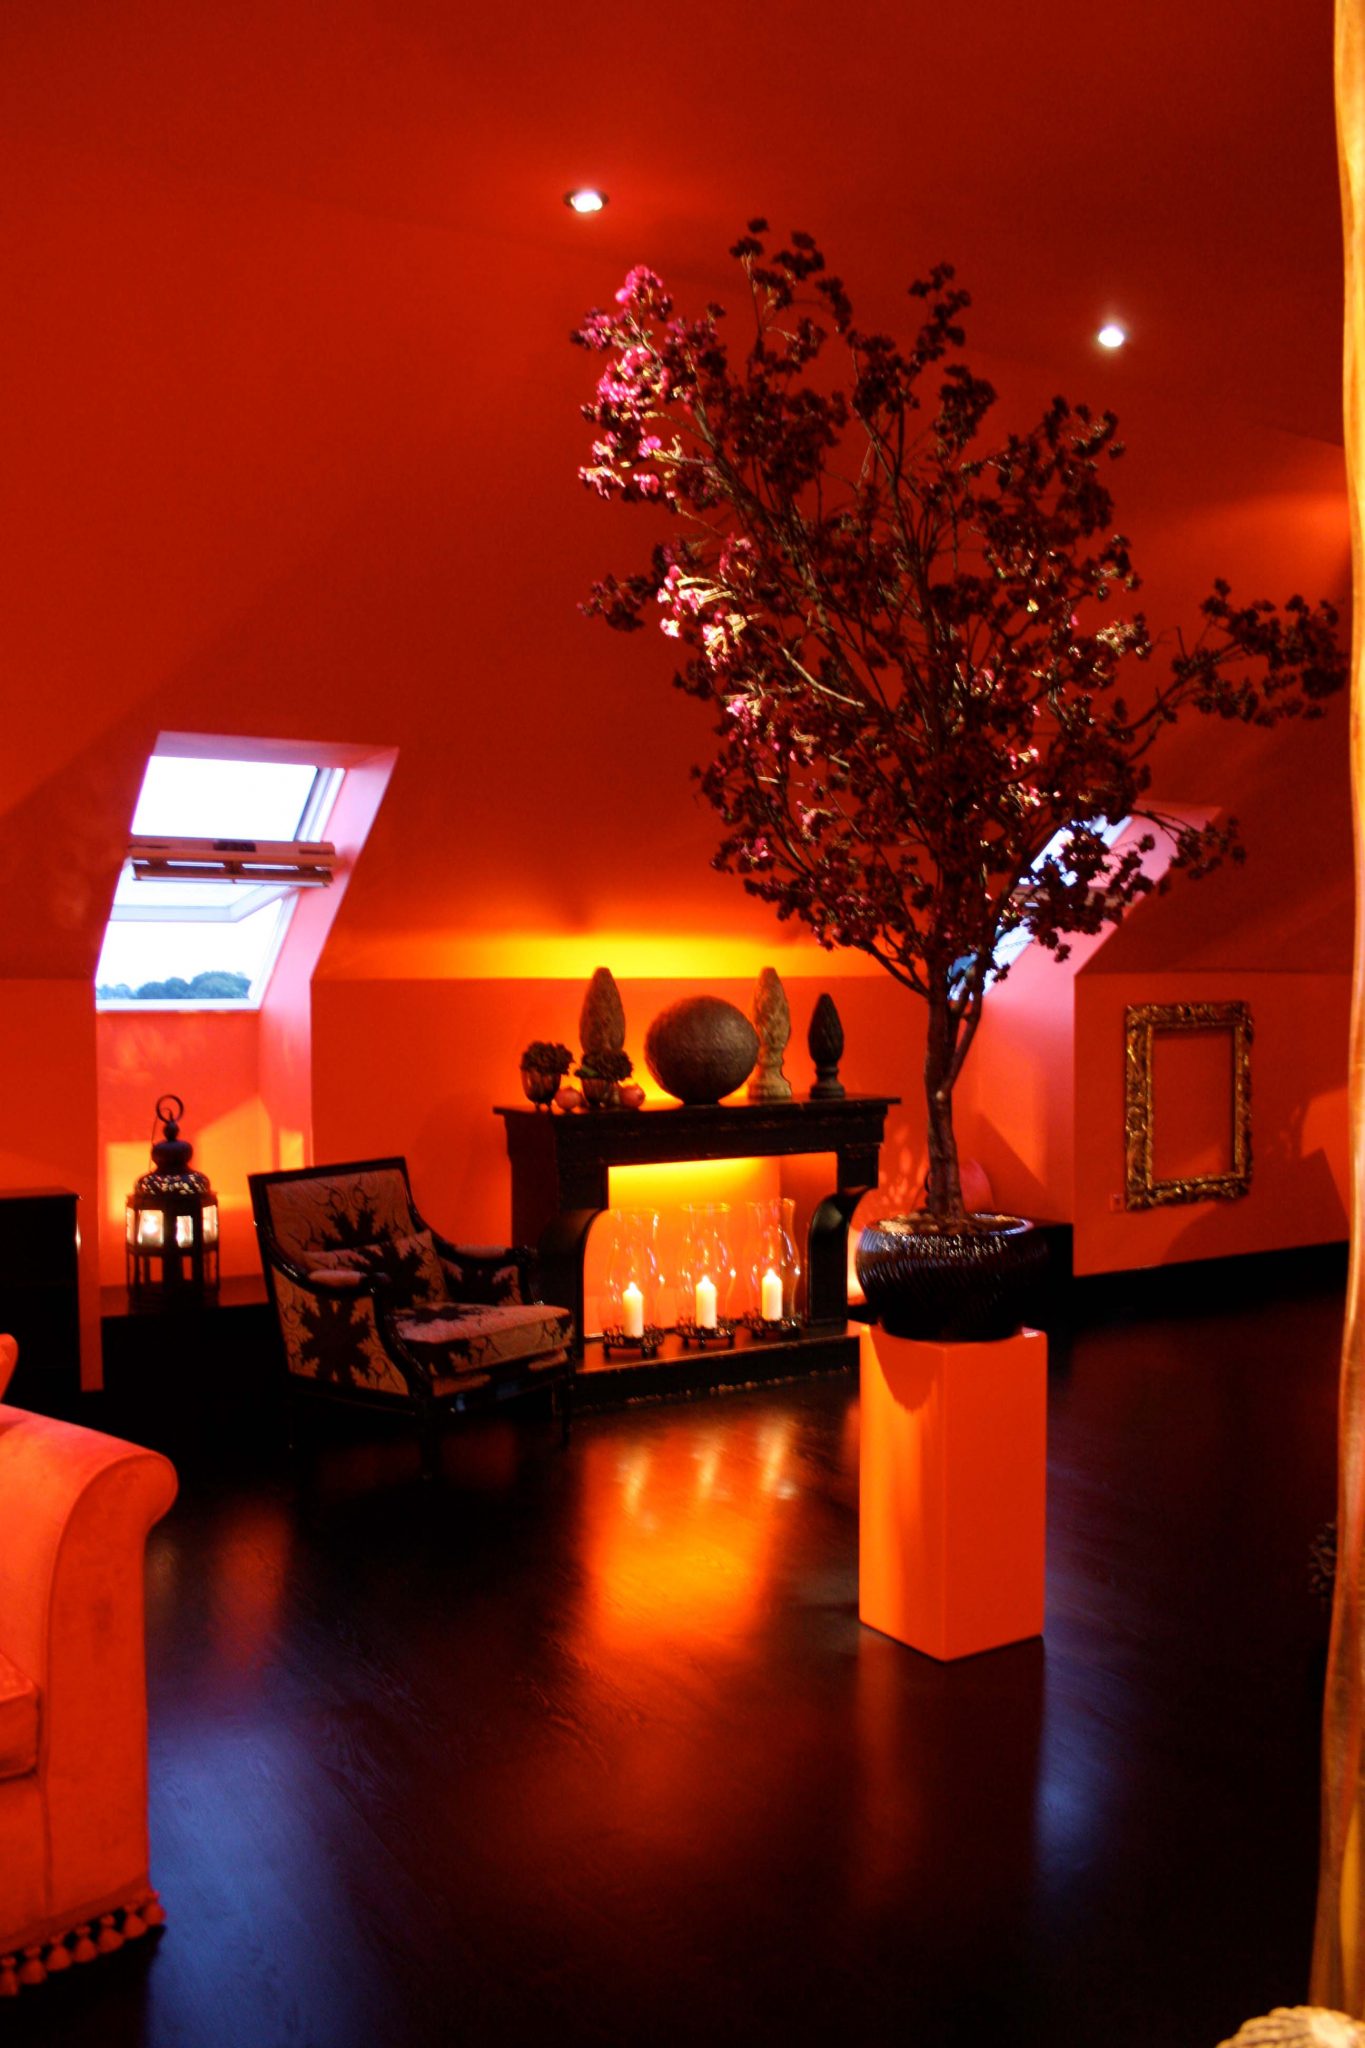 Lounge-Sessel mit gemustertem Stoffbezug, beleuchtetem Sideboard mit Deko und kleinem Baum in der Raummitte, Zimmer orange gestrichen.